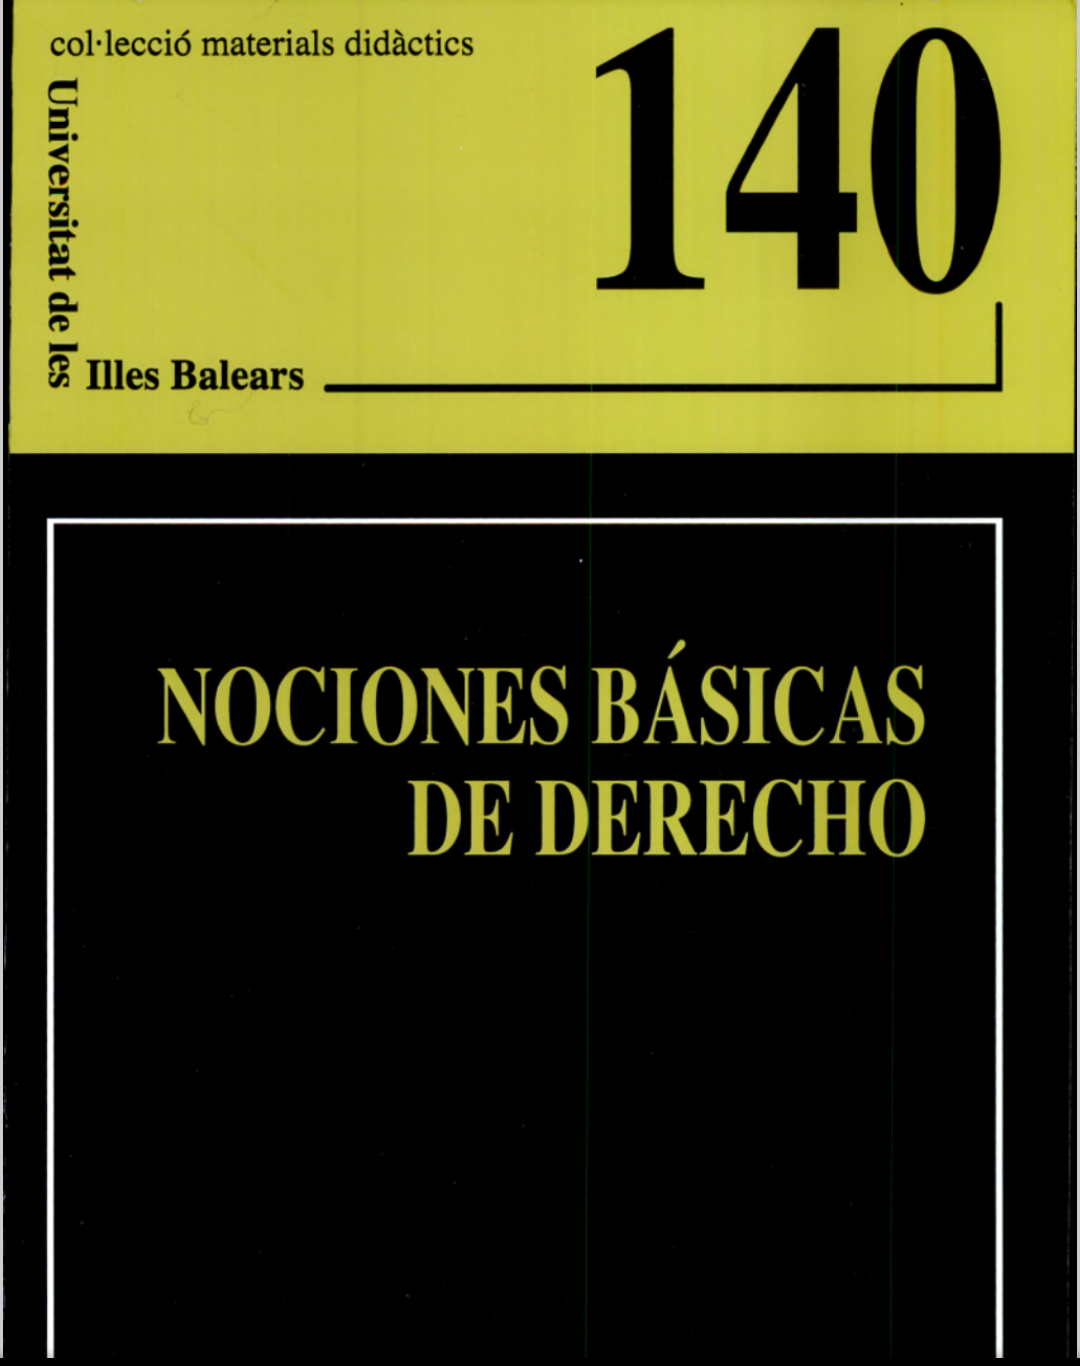 Imagen de portada del libro Nociones básicas de derecho